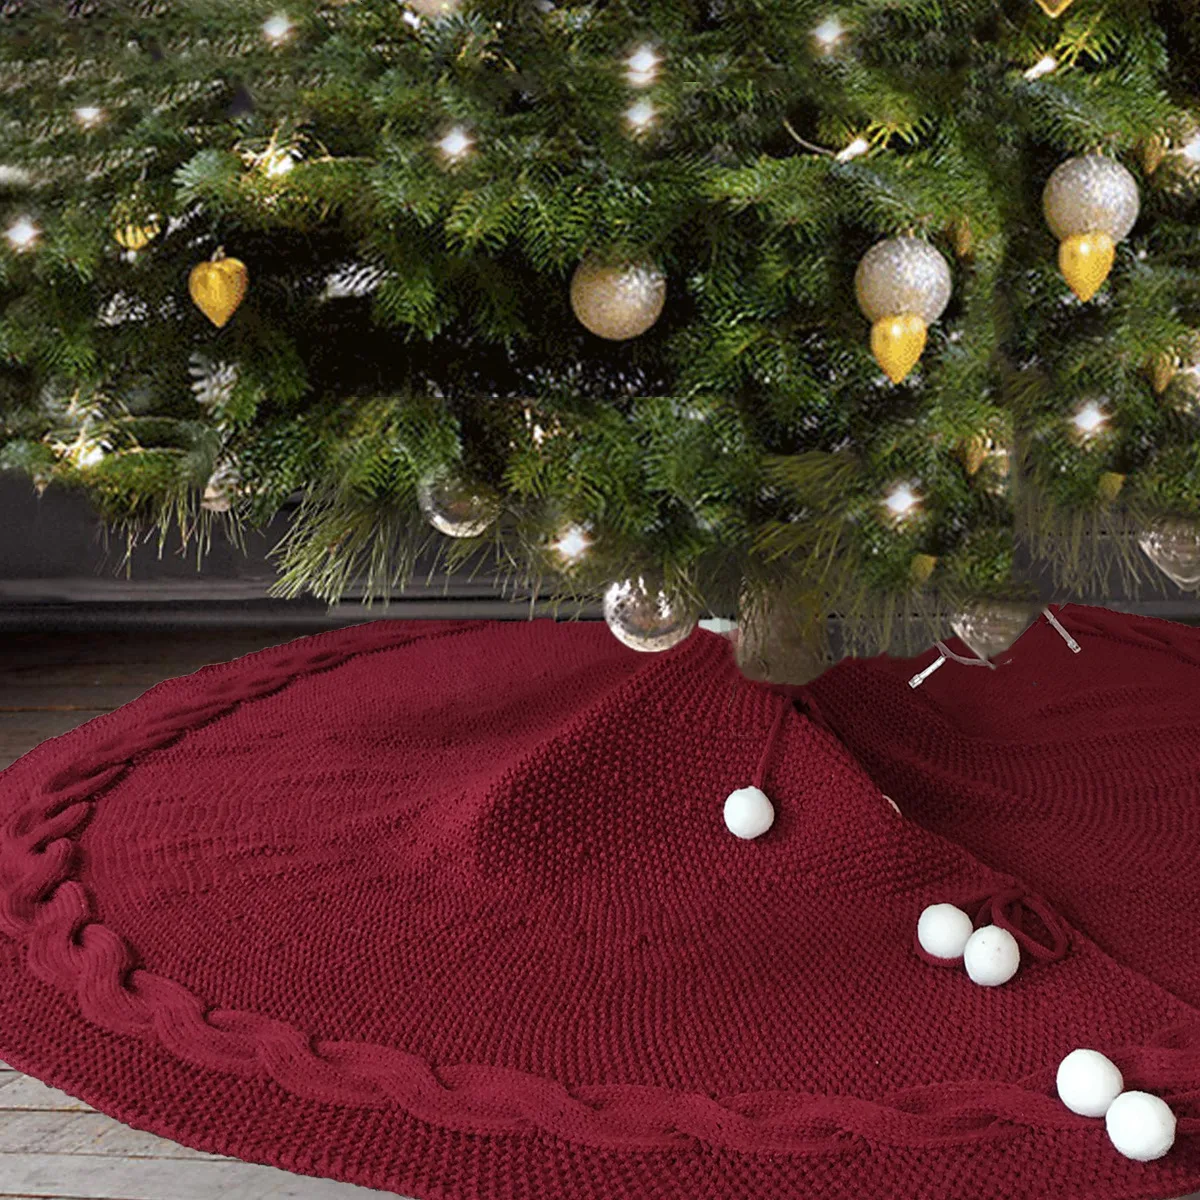 Коврик для юбки с принтом рождественской елки, однотонный коврик для фартука, рождественские вечерние украшения для дома